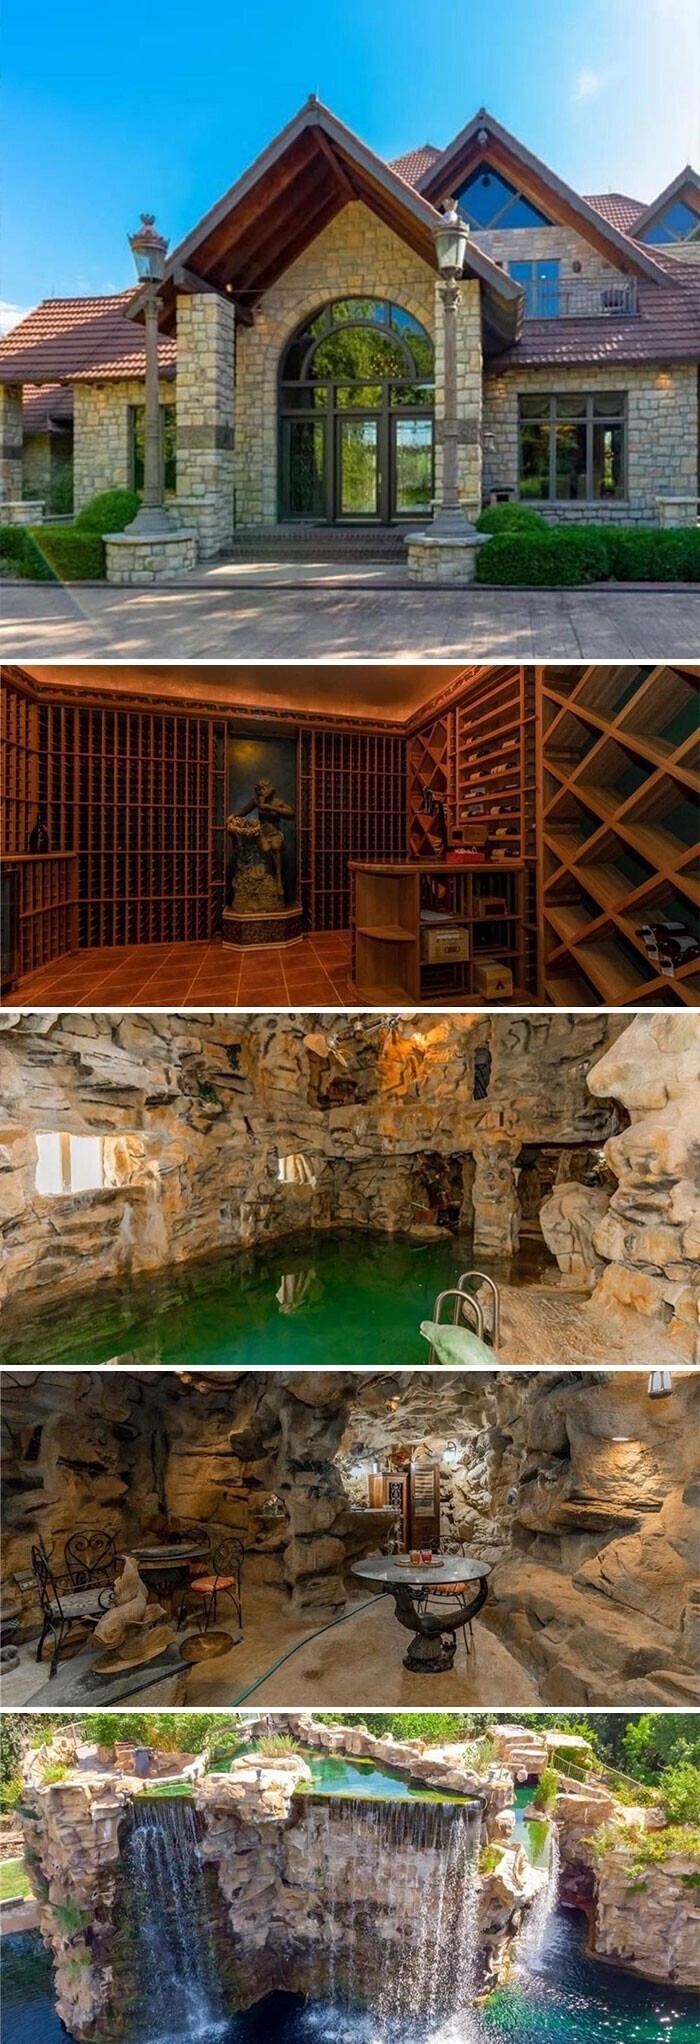 Дом за $10 900 000 с подводными туннелями для ныряния с аквалангом